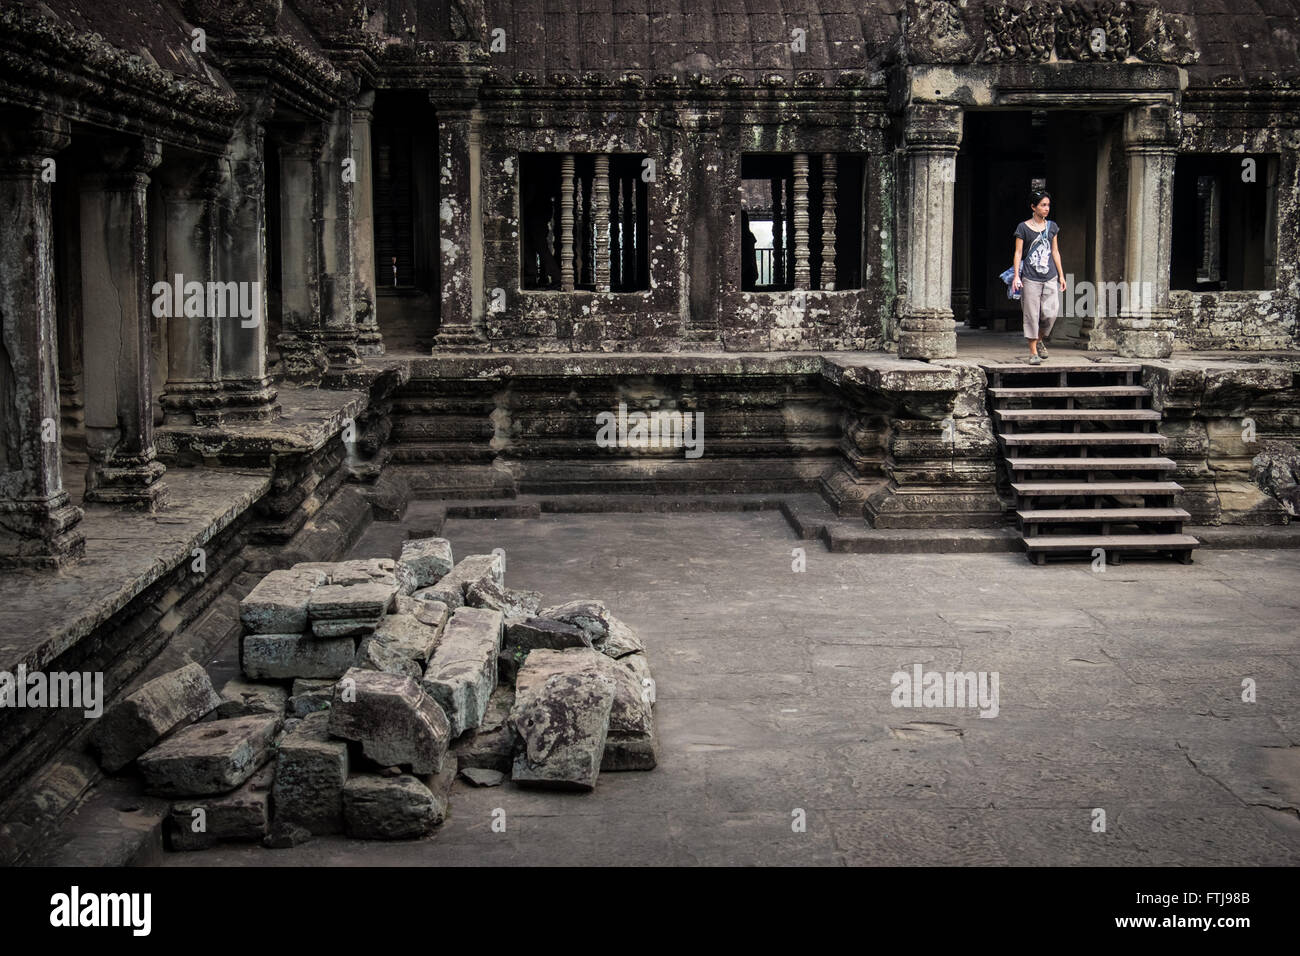 Une femme marche dans le temple d'Angkor Wat, au Cambodge. Banque D'Images